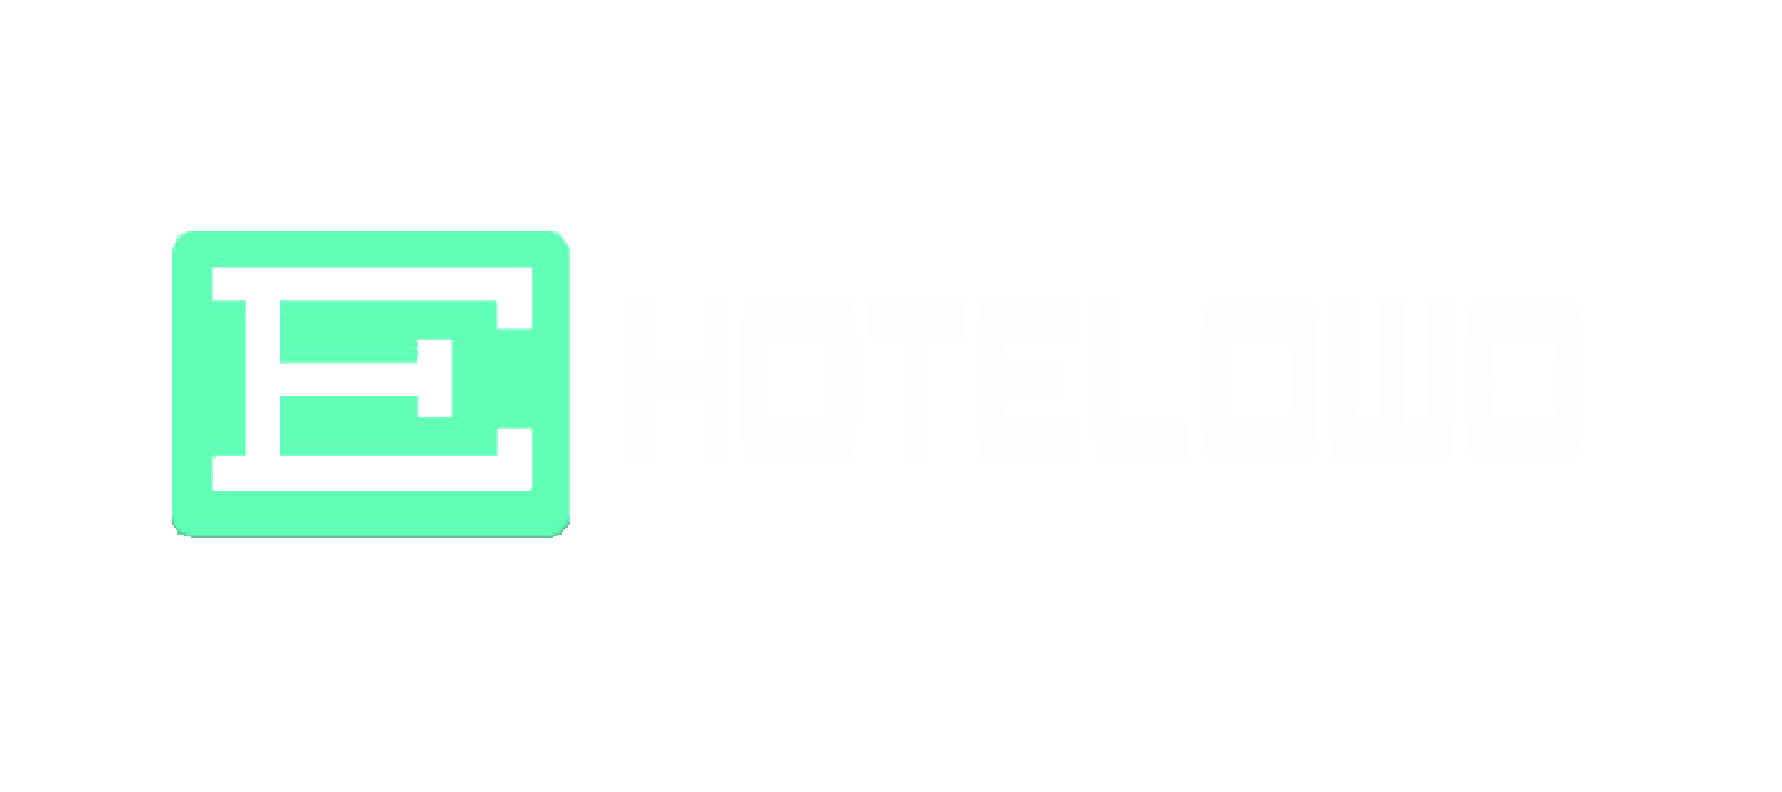 e-hotelowo